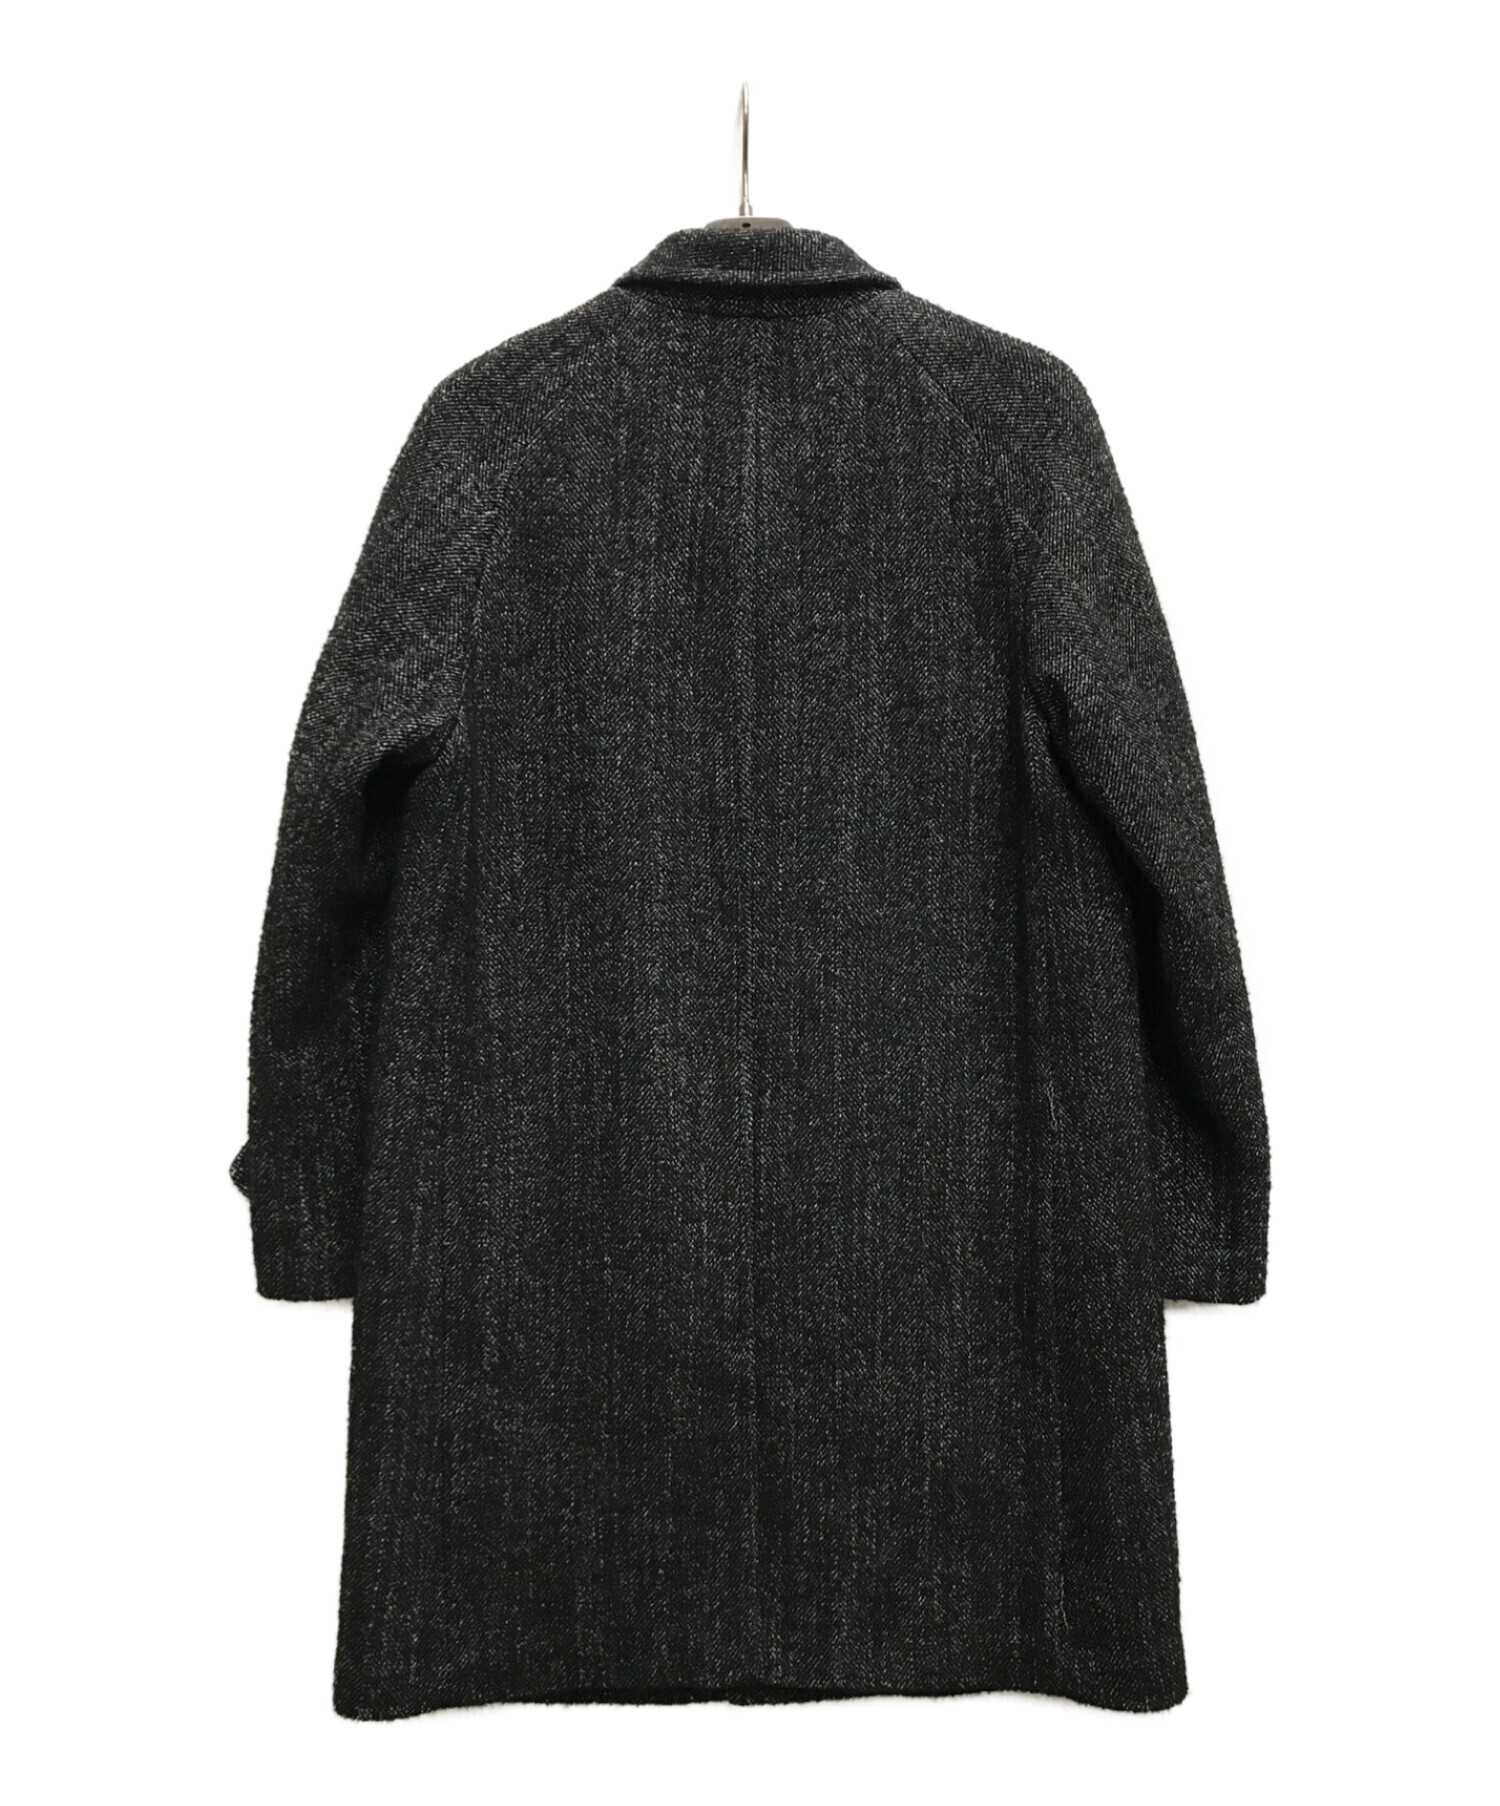 SUPREME (シュプリーム) Loro Piana Wool Trench Coat ブラック サイズ:S